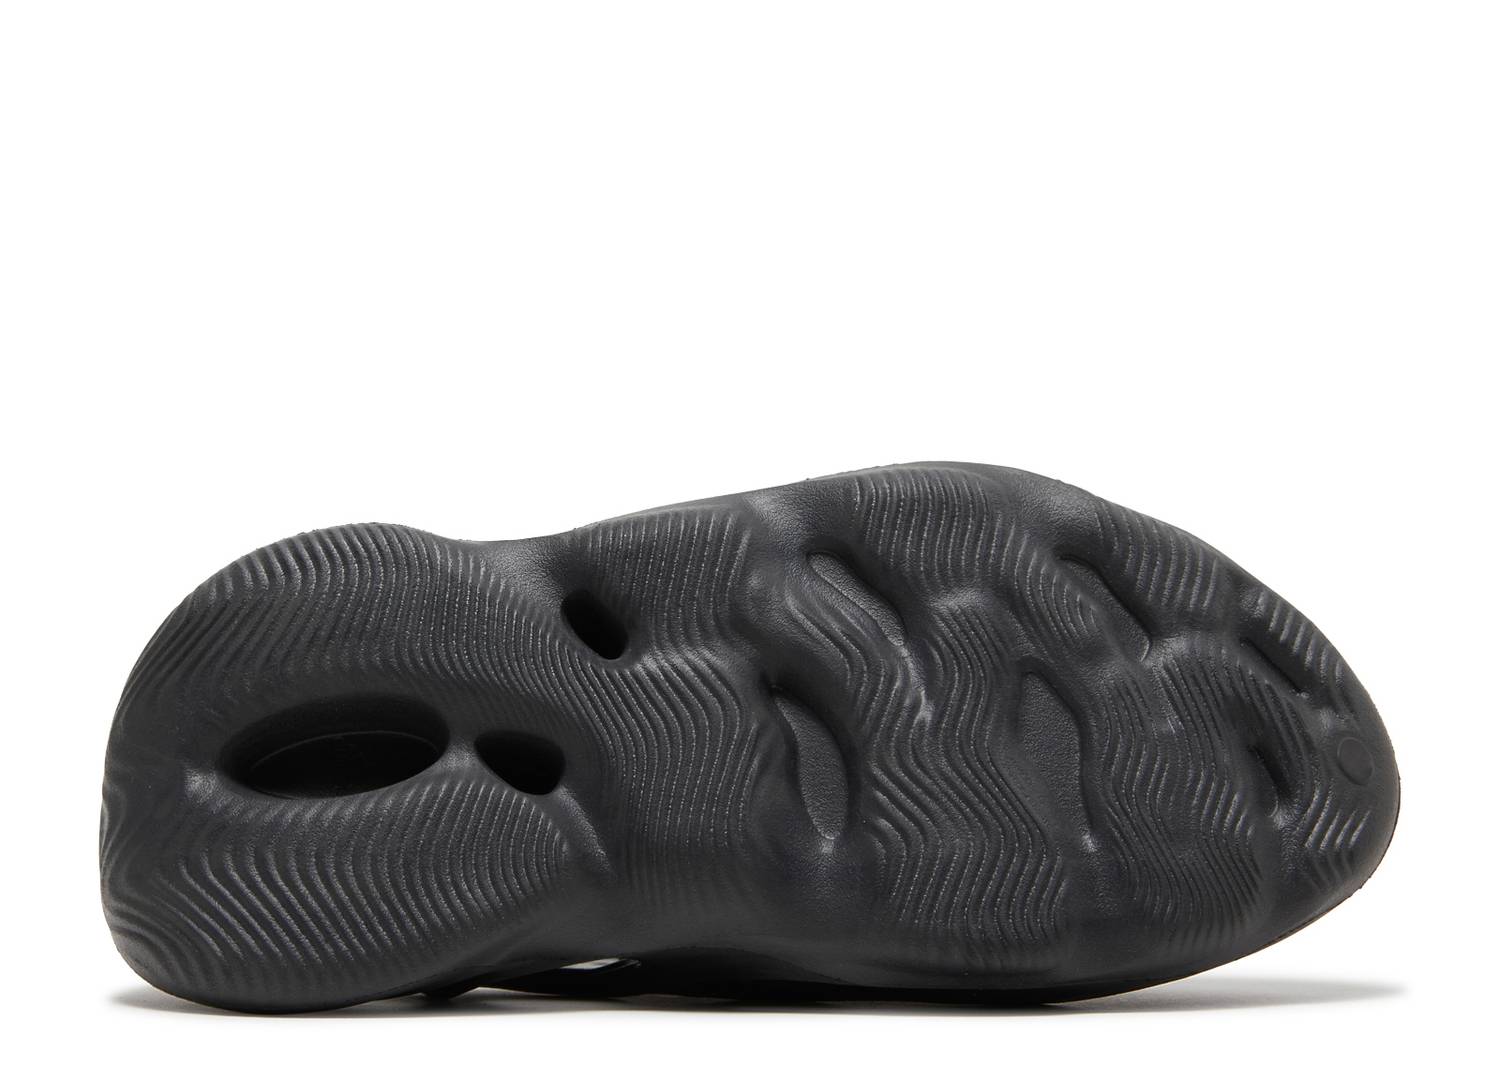 Adidas Yeezy Foam Runner ‘Onyx'